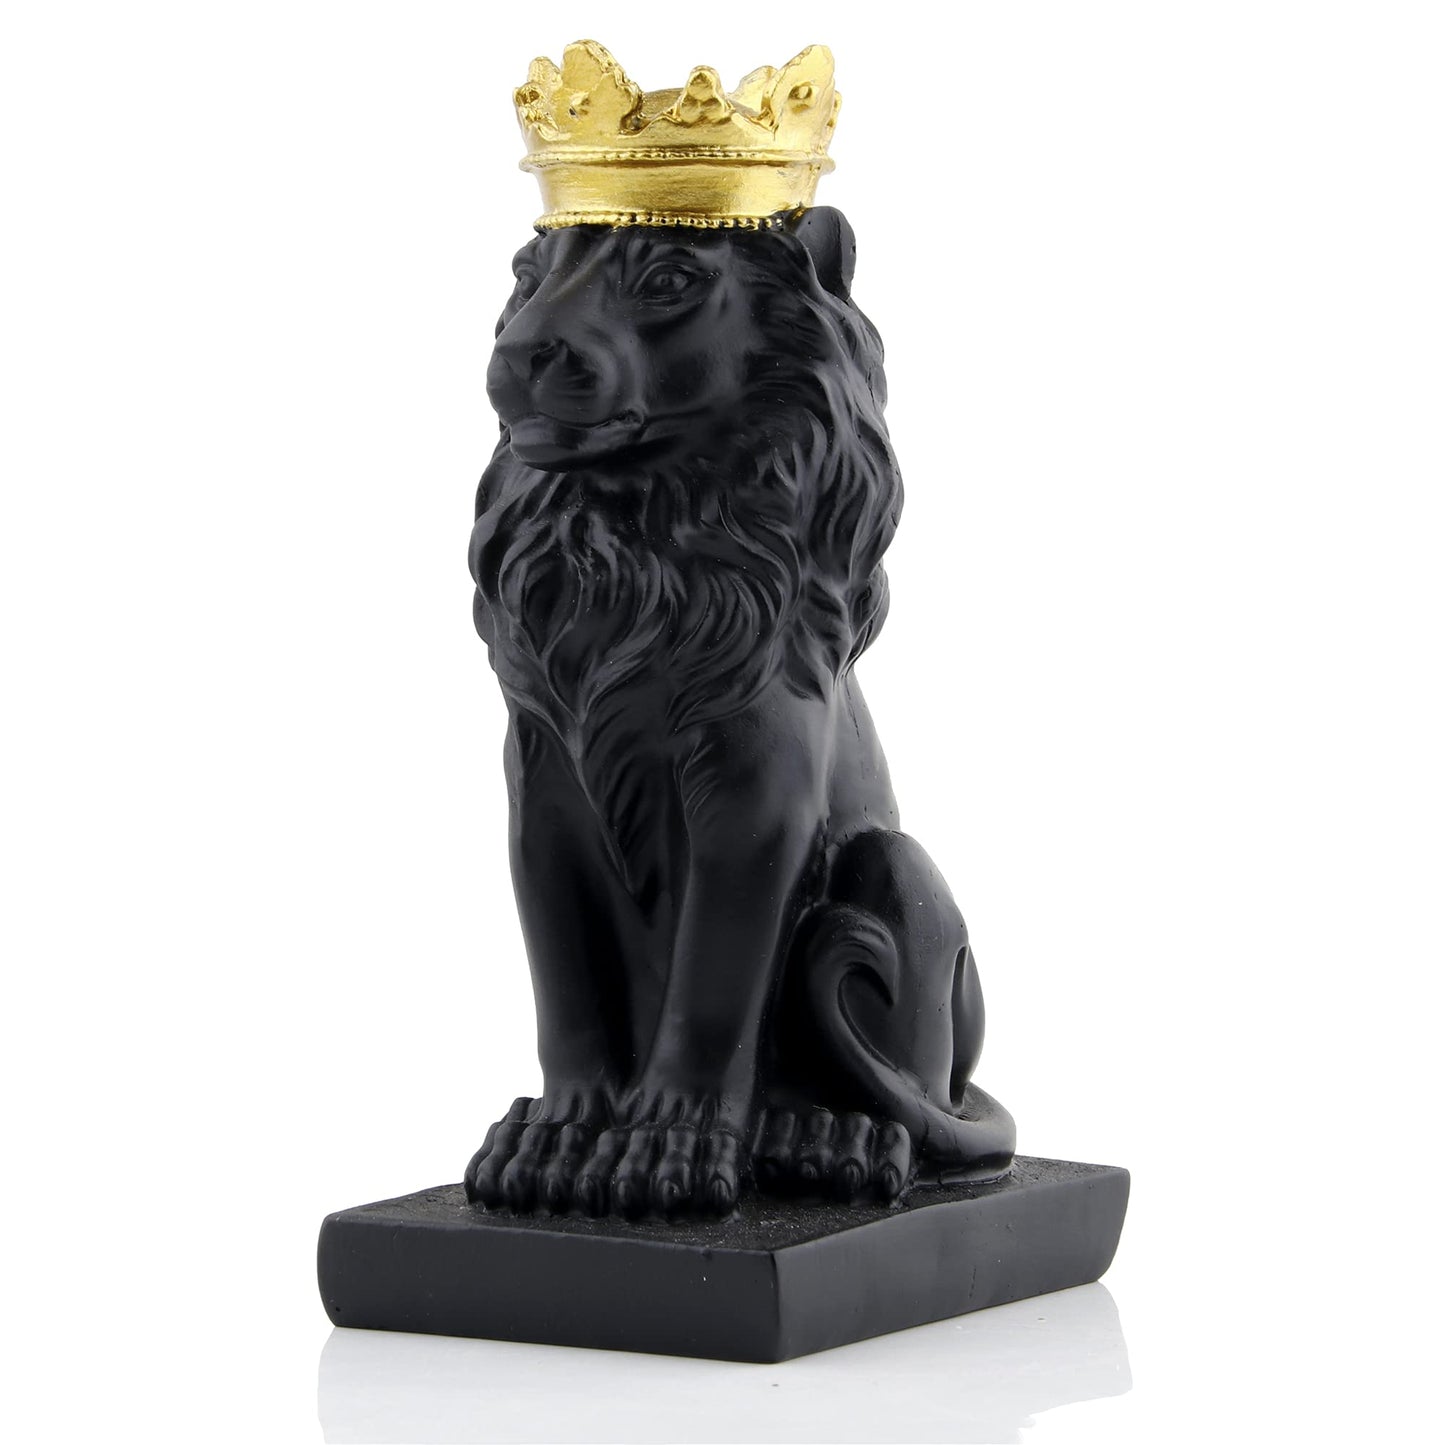 Black Lion W/ Gold Crown